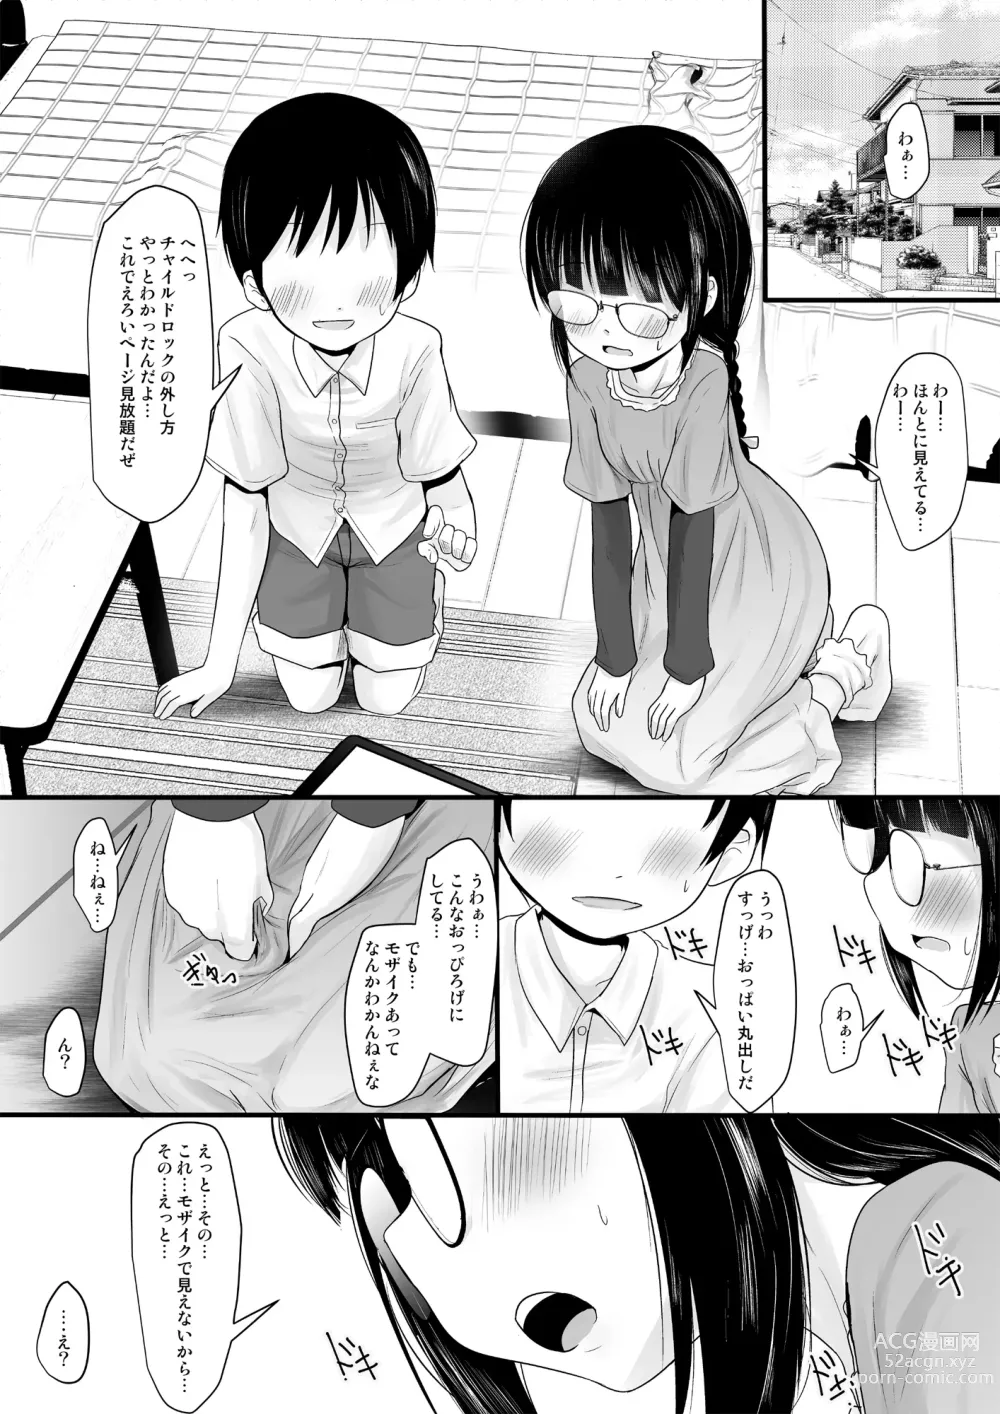 Page 17 of doujinshi Fanbox Matome vol 1